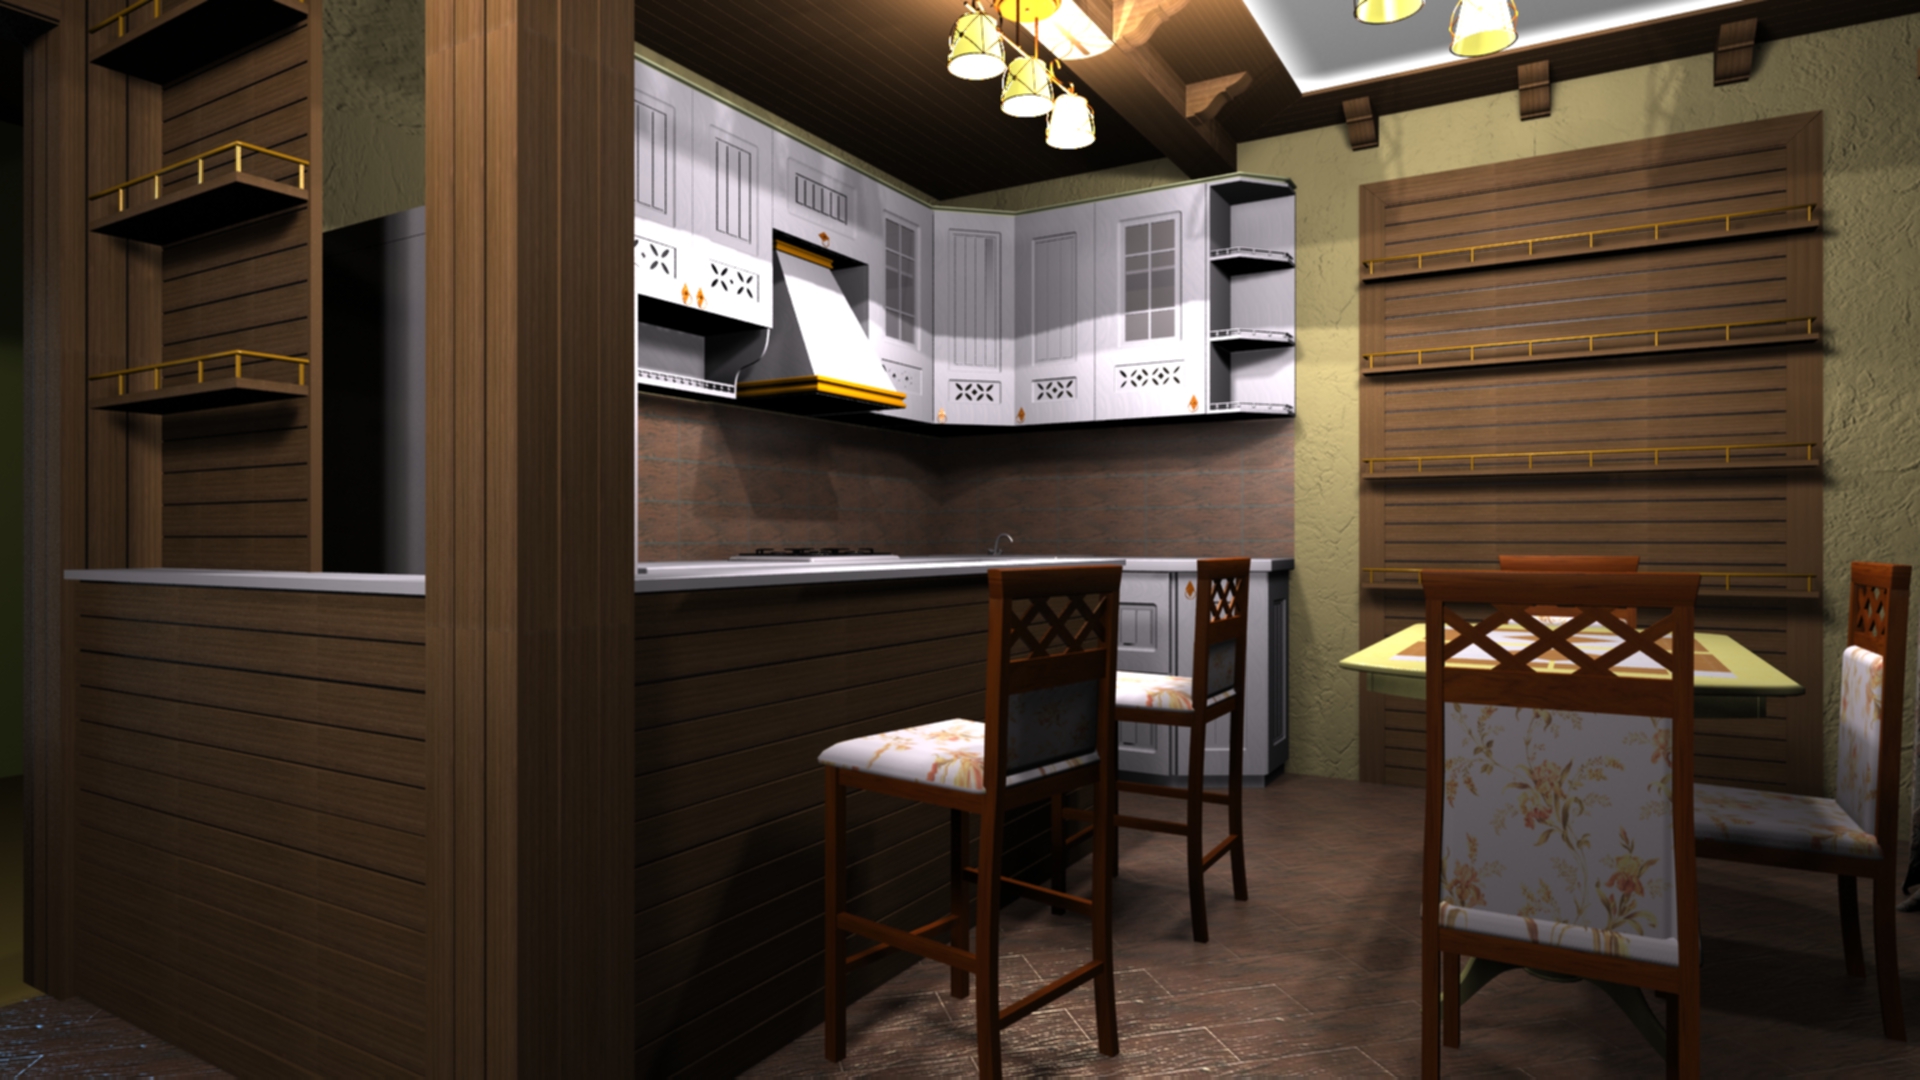 Cuisine salle à manger dans 3d max vray 2.0 image